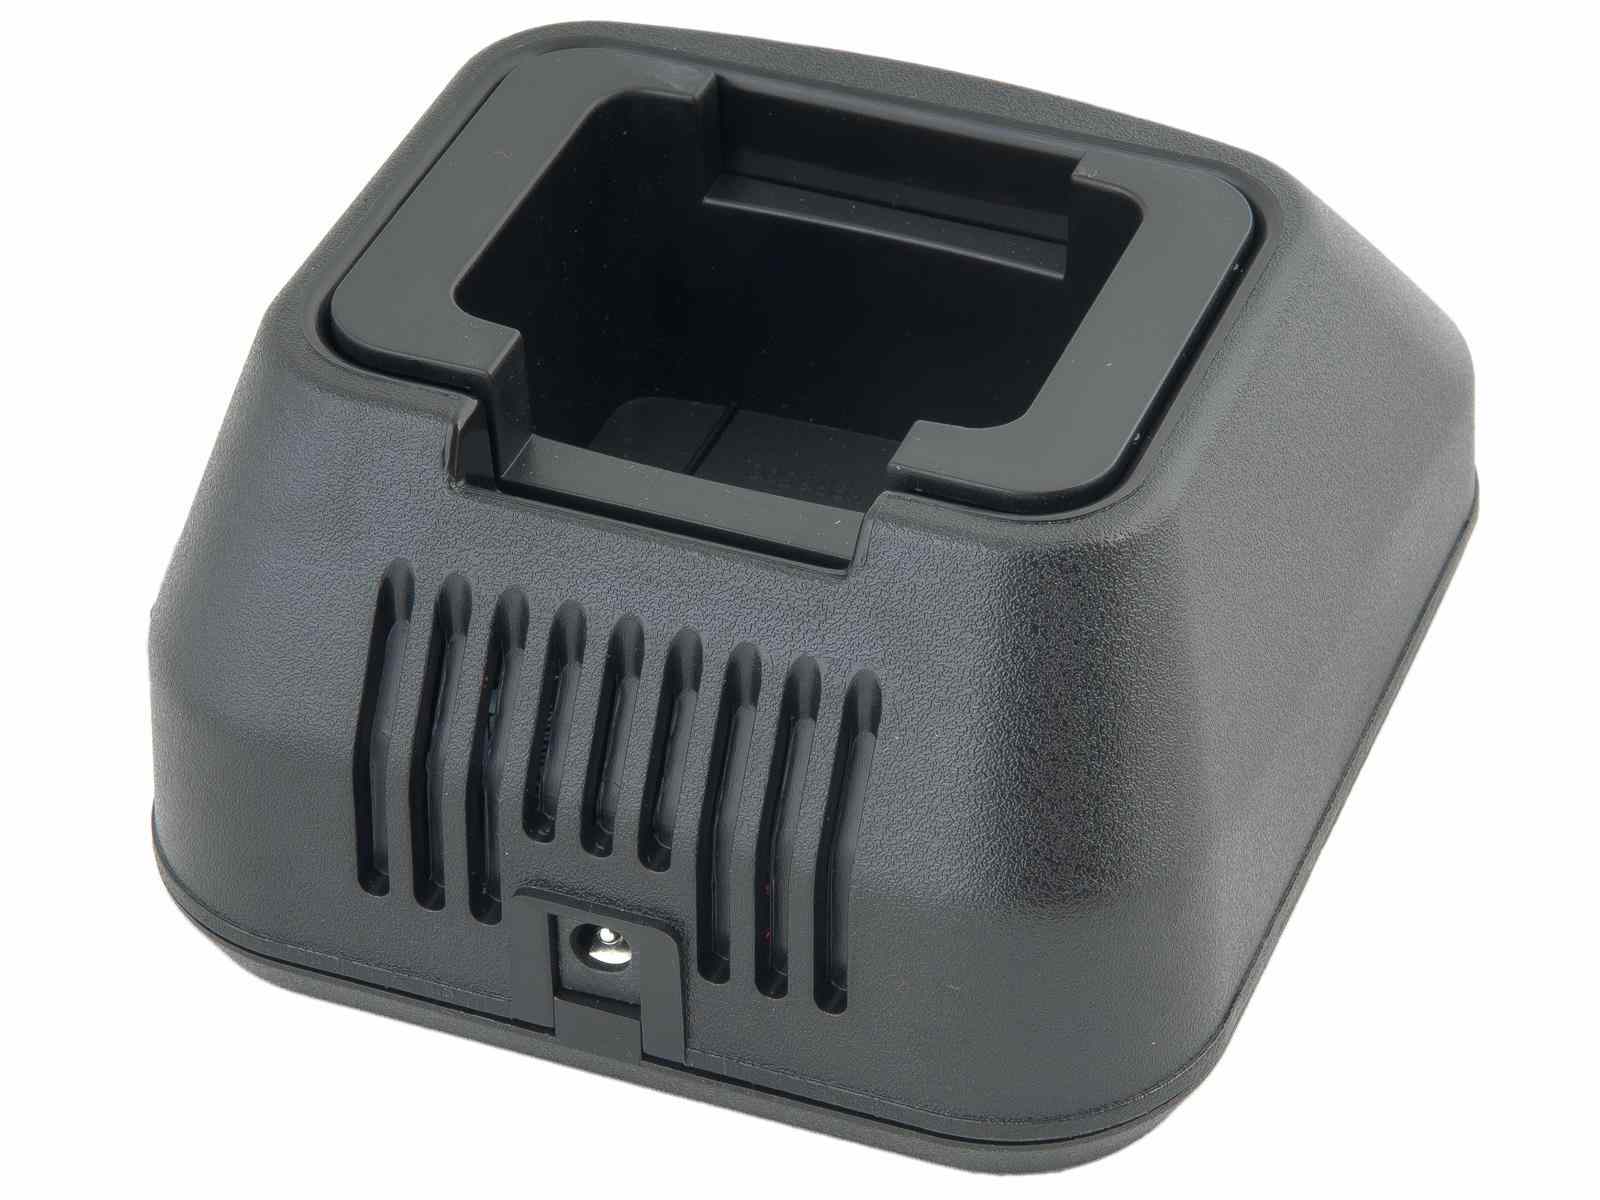 AVACOM nabíječ baterií pro radiostanice Motorola DP3400, DP3600, TRBO XPR63002 